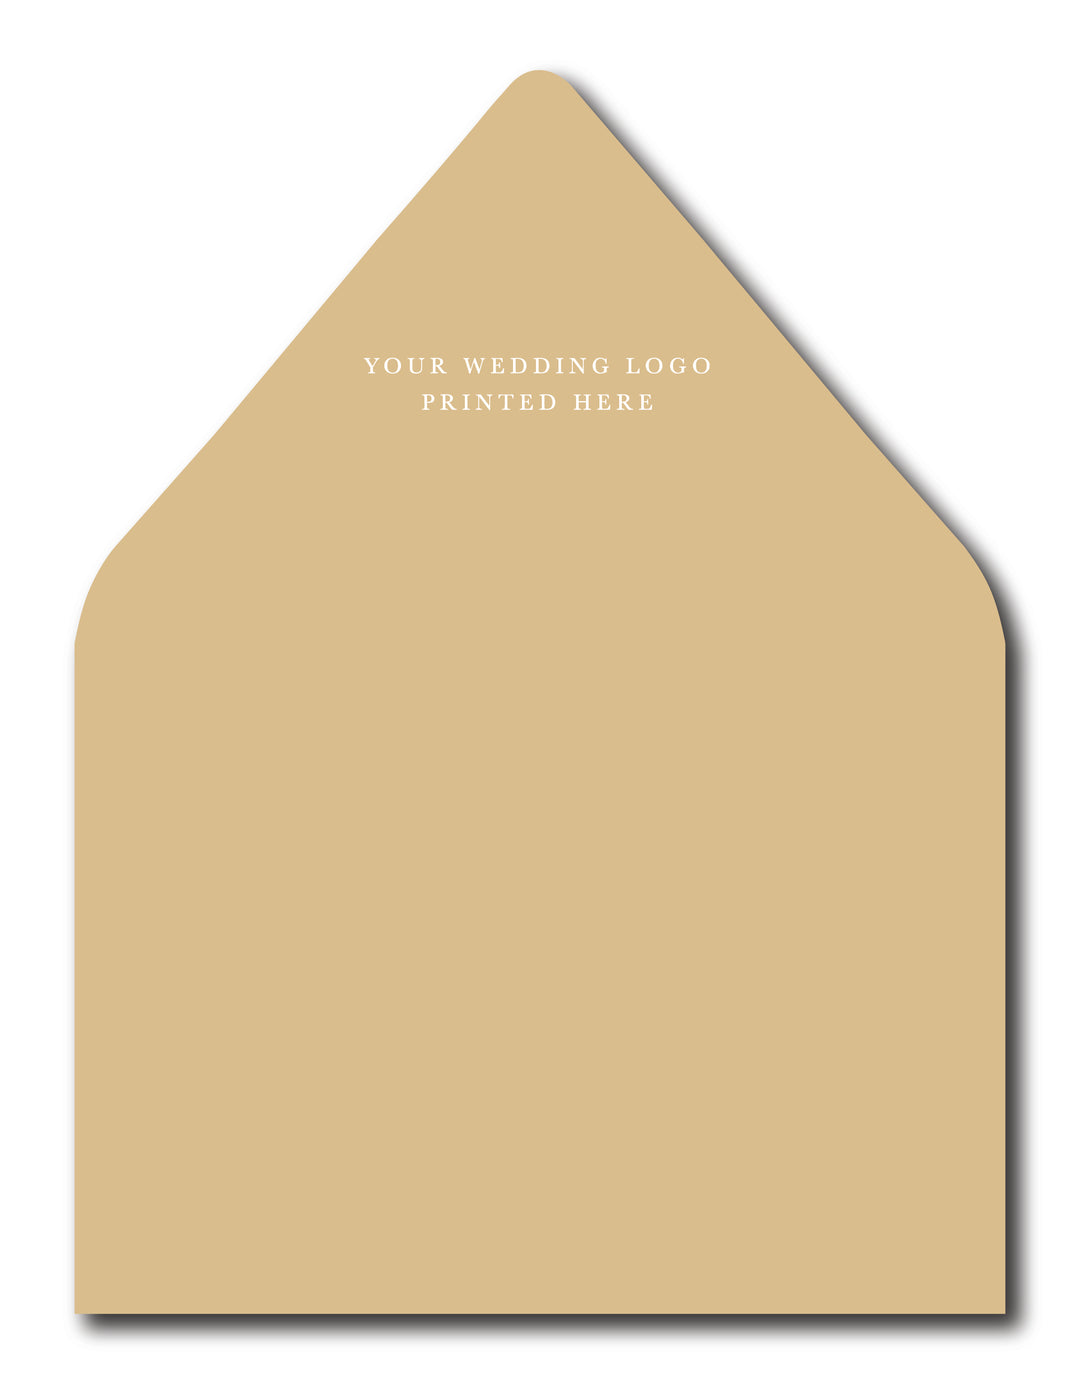 The Pale Gold Envelope Liner